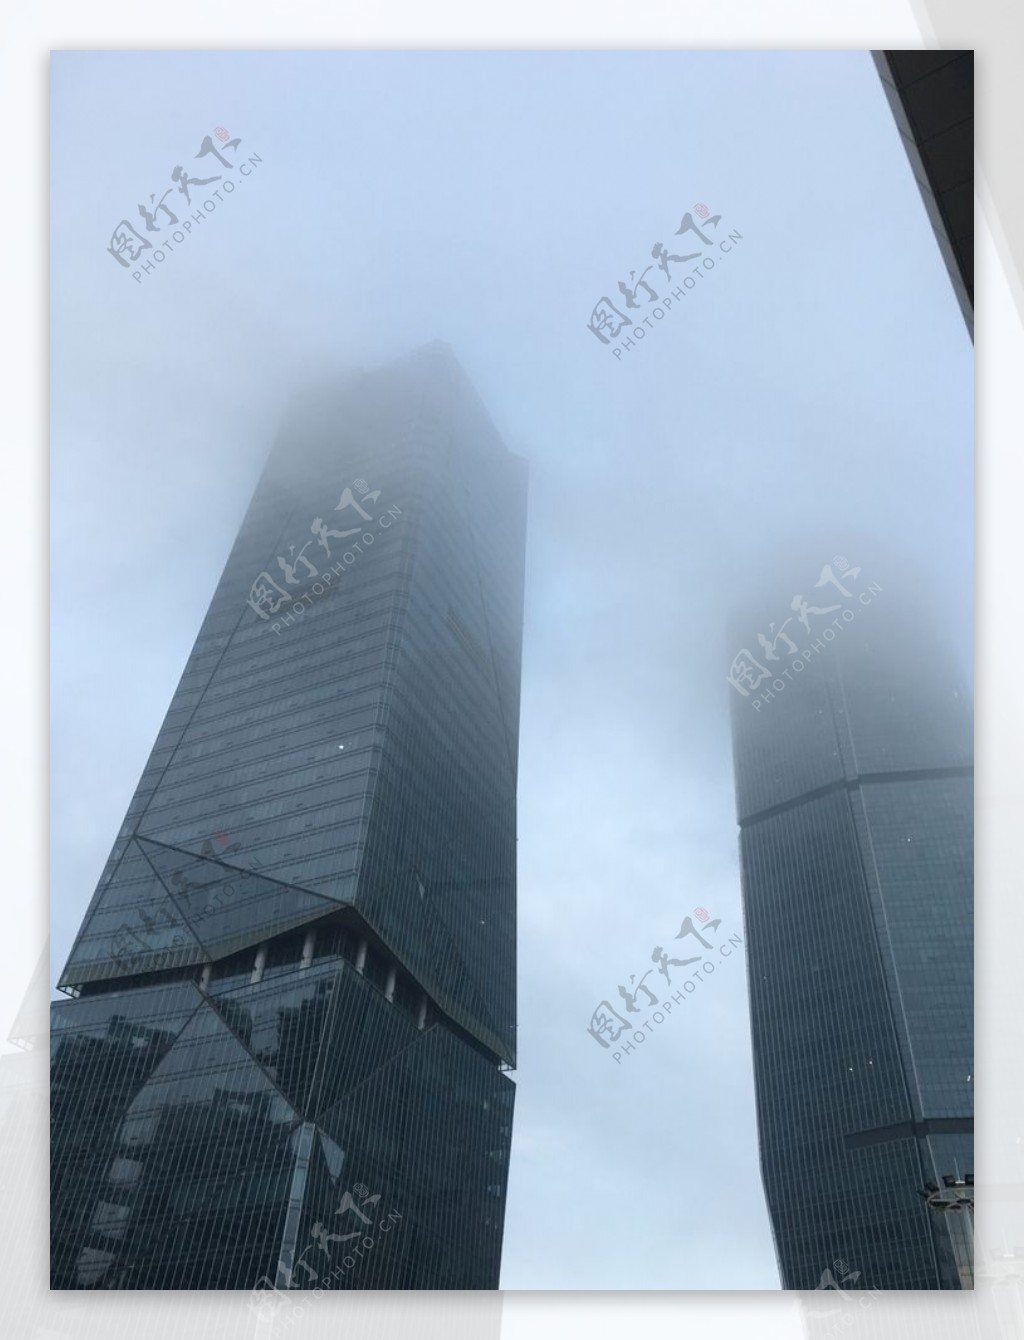 雾里的大楼